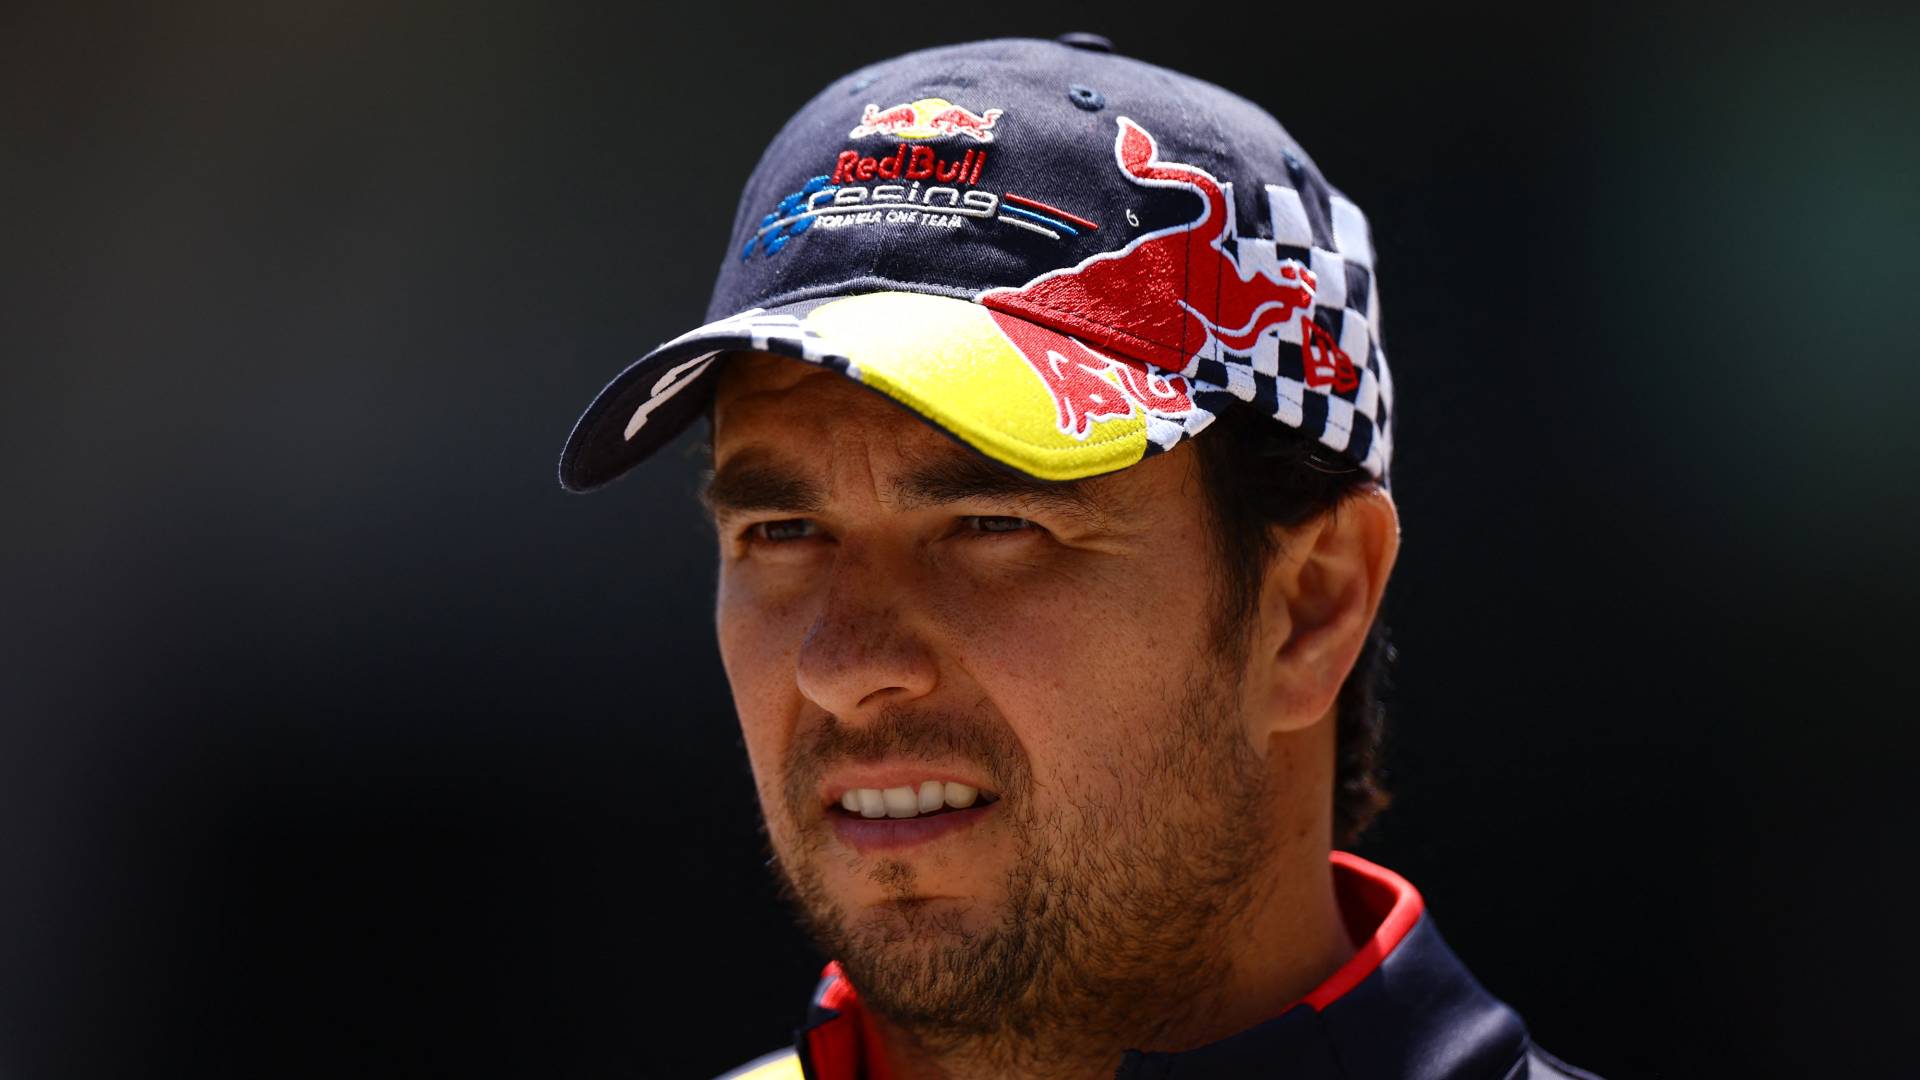 La Fórmula 1 vuelve a dejar fuera a Checo Pérez del top 5 del ranking